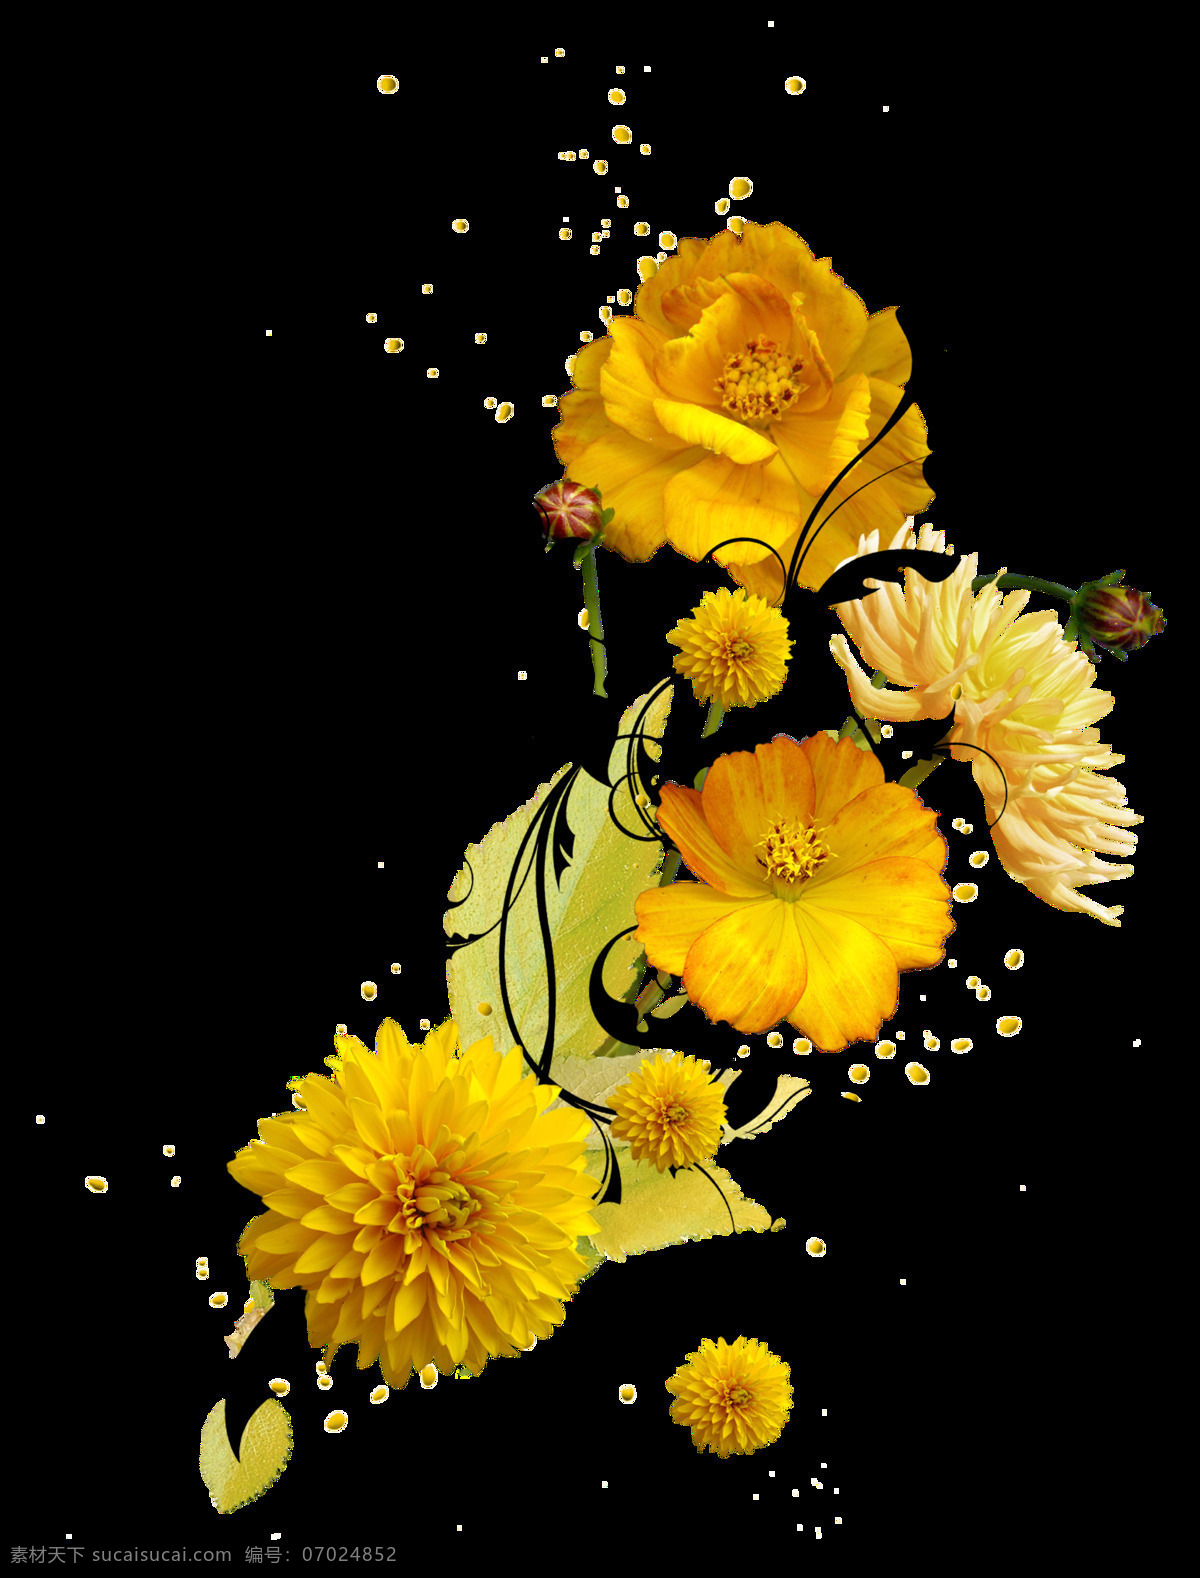 高贵感 手绘 多样 花卉 透明 菊花 玫瑰花 黑色 黄色 透明素材 免扣素材 装饰图片